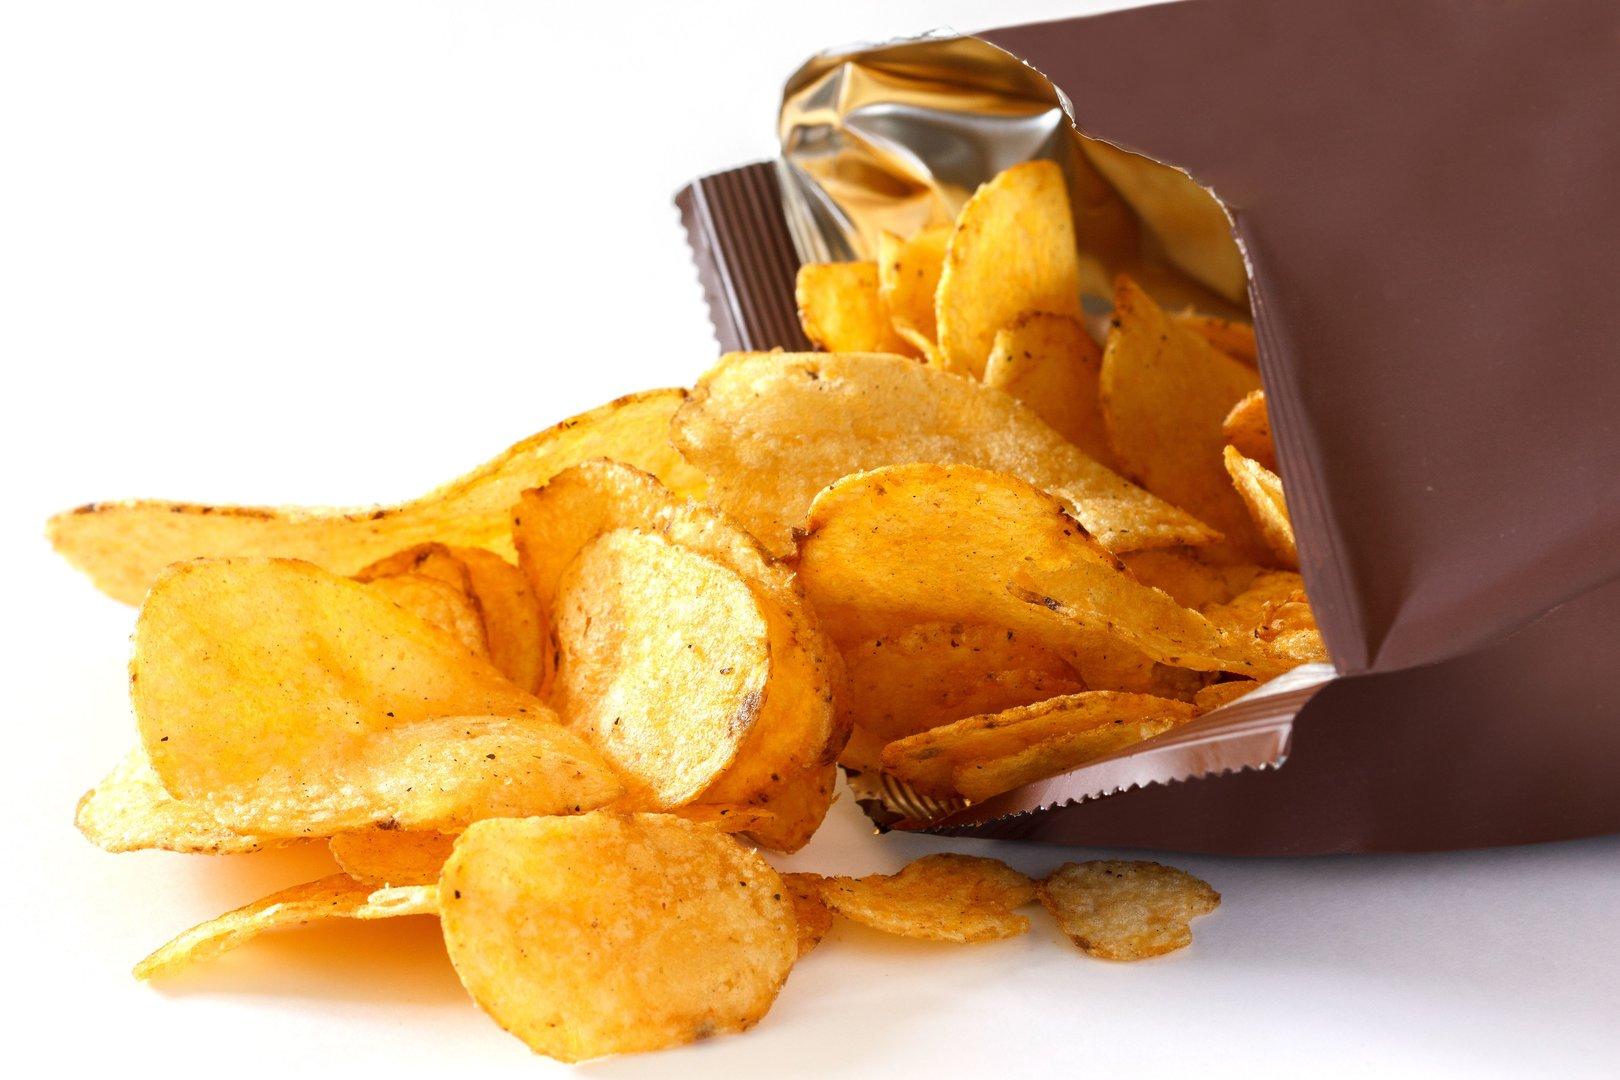 Warum wir Chips nicht widerstehen können